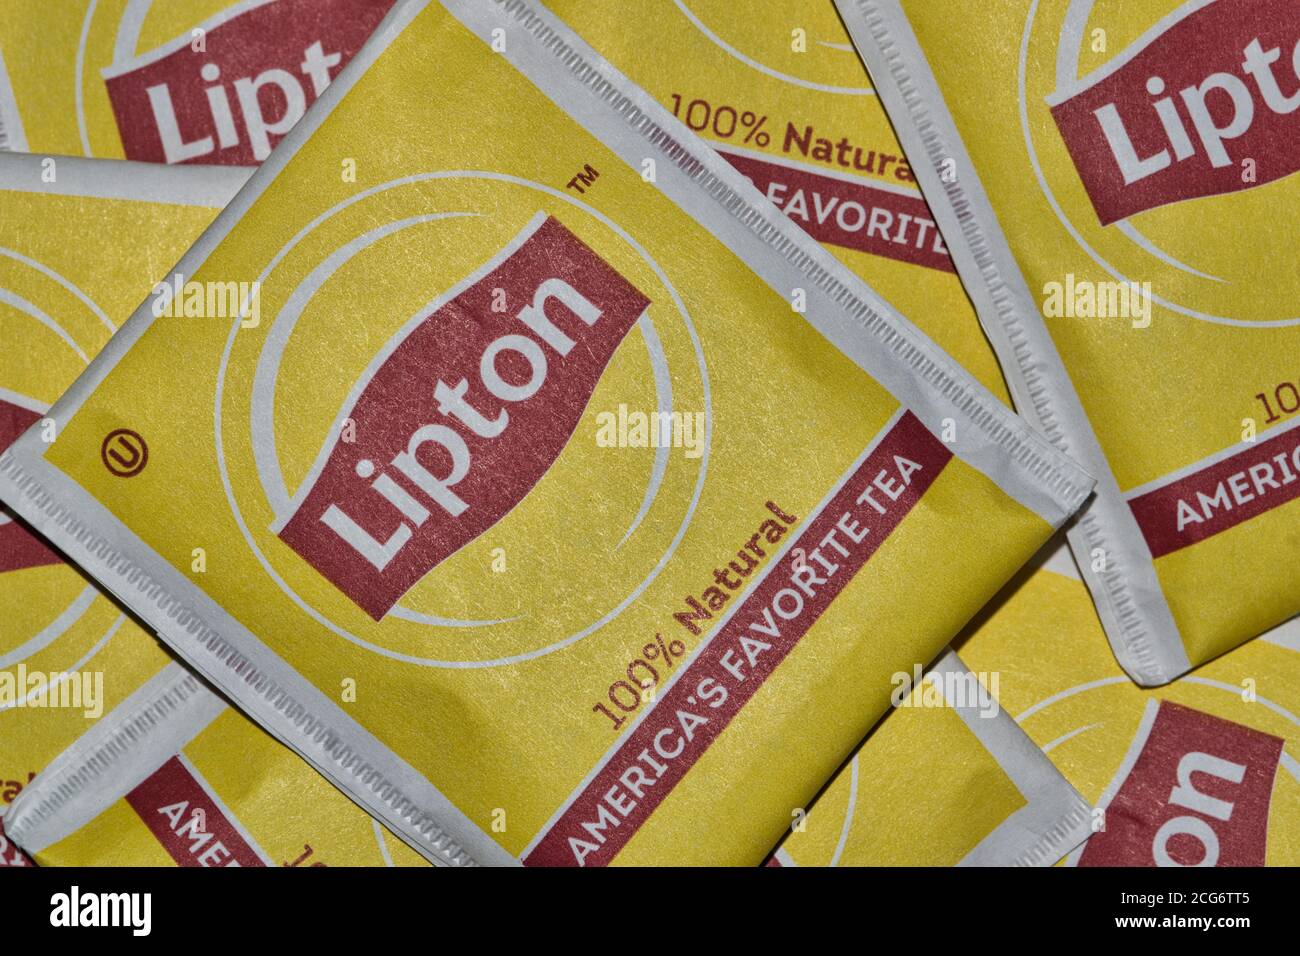 Houston, Texas/USA 05/10/2020: Sachets carrés de thé Lipton non ouverts dispersés sans serrer, image macro. Banque D'Images